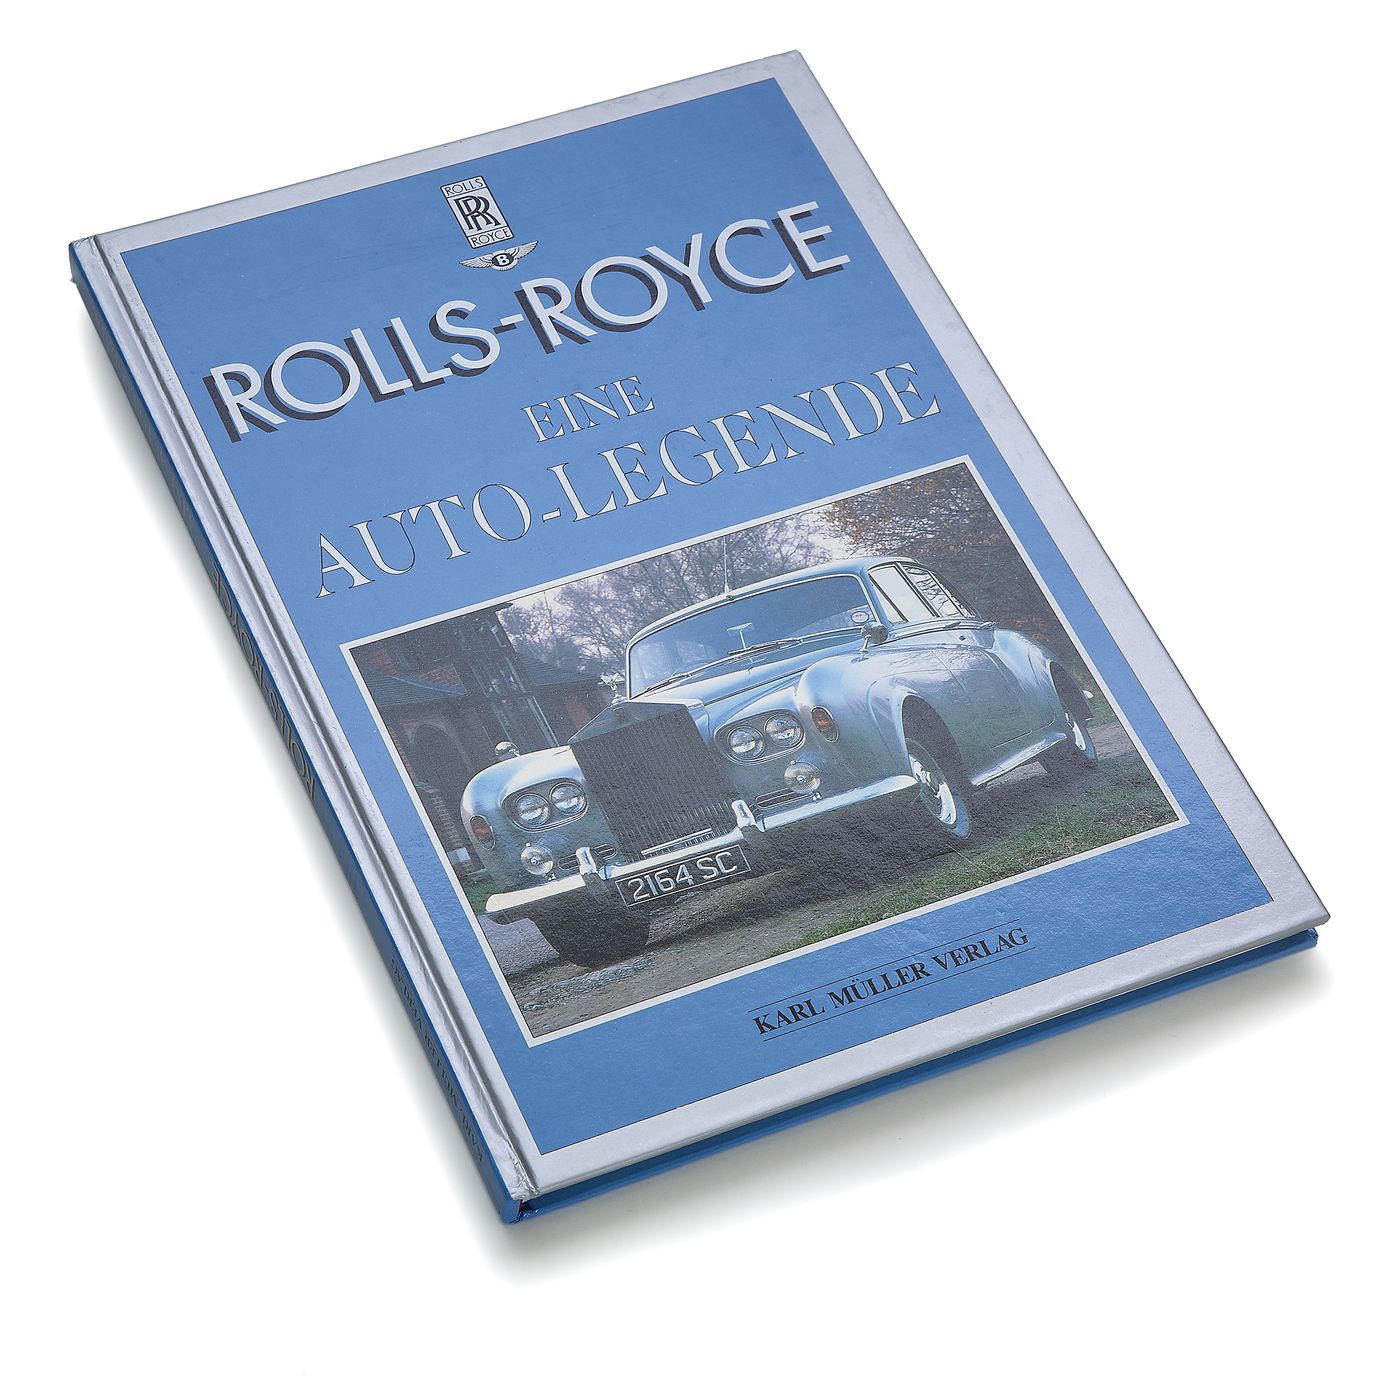 Rolls-Royce
Rolls-Royce
Rolls-Royce